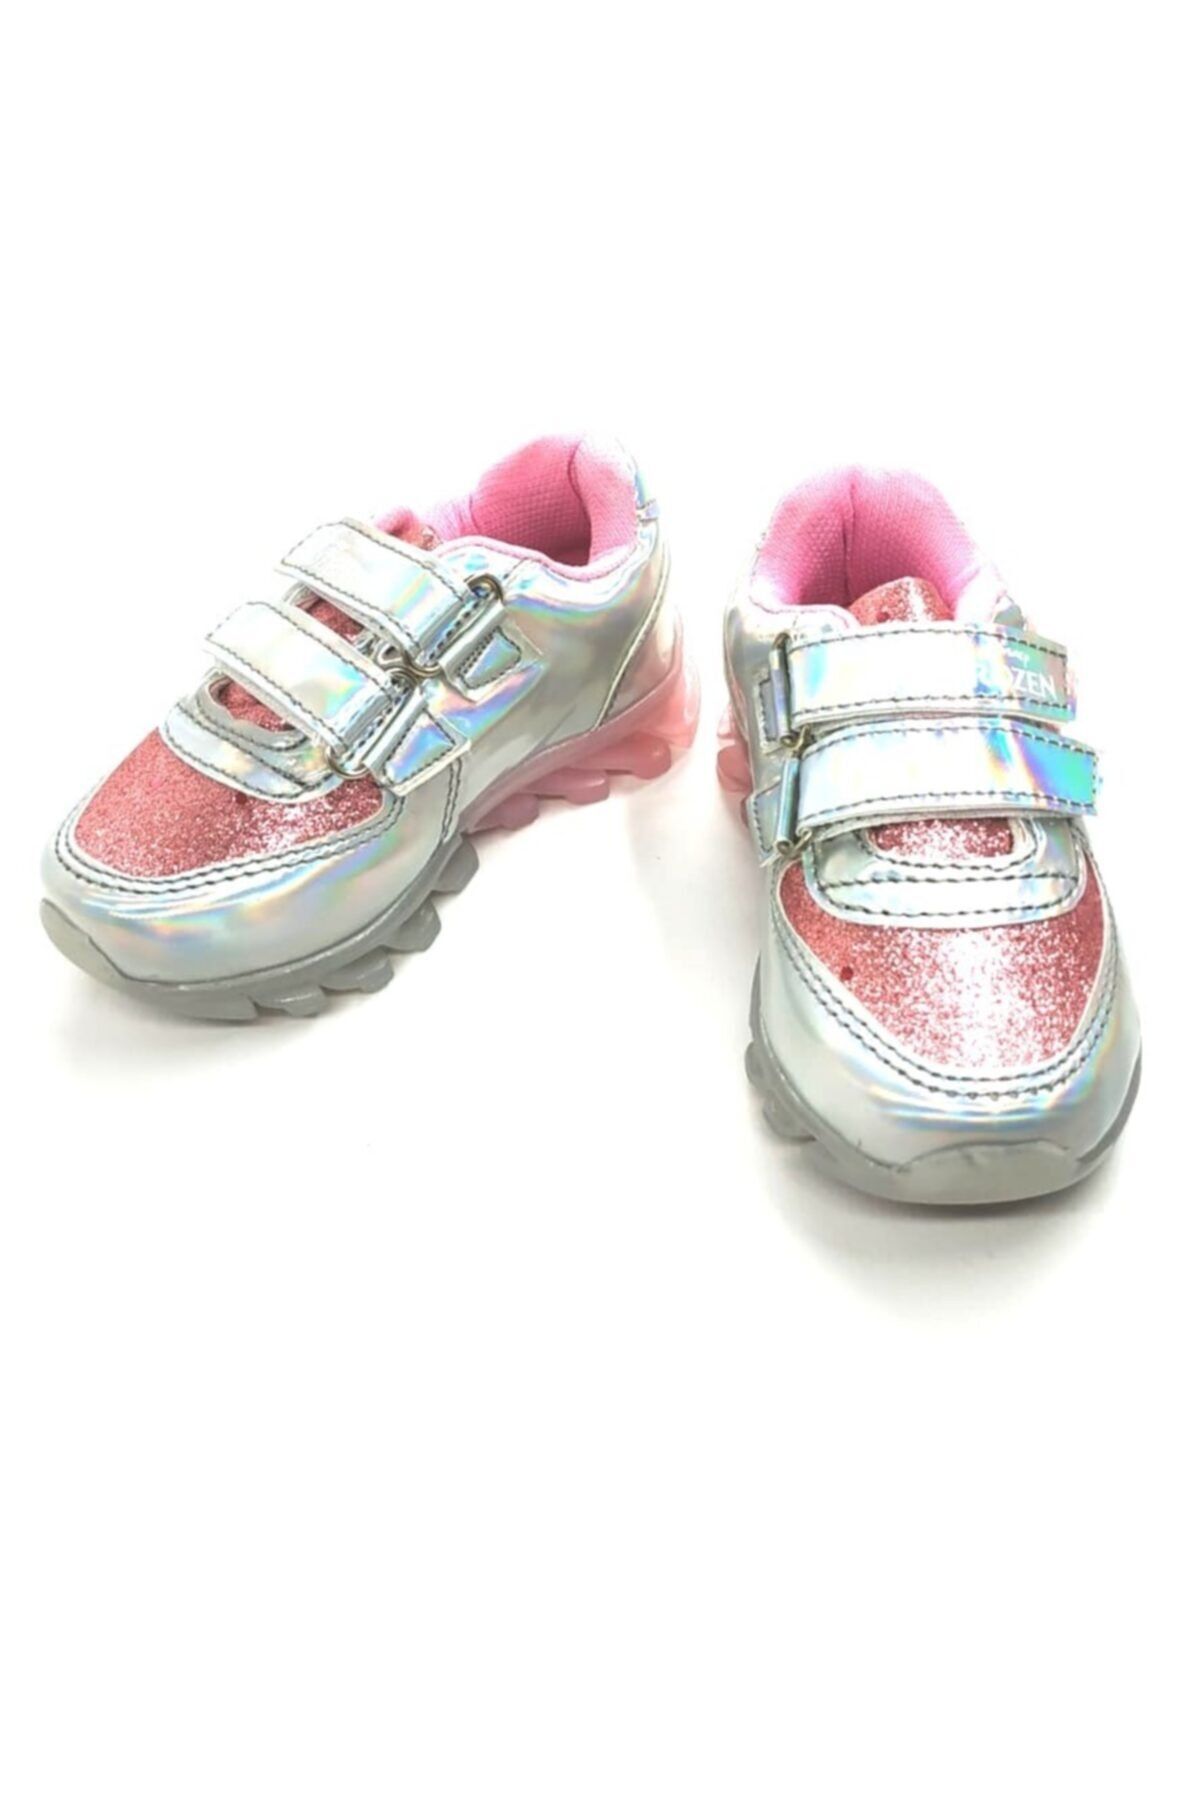 DİSNEY Kız Çocuk Gümüş Frozen Hologramlı Tabanı Işıklı Spor Ayakkabı